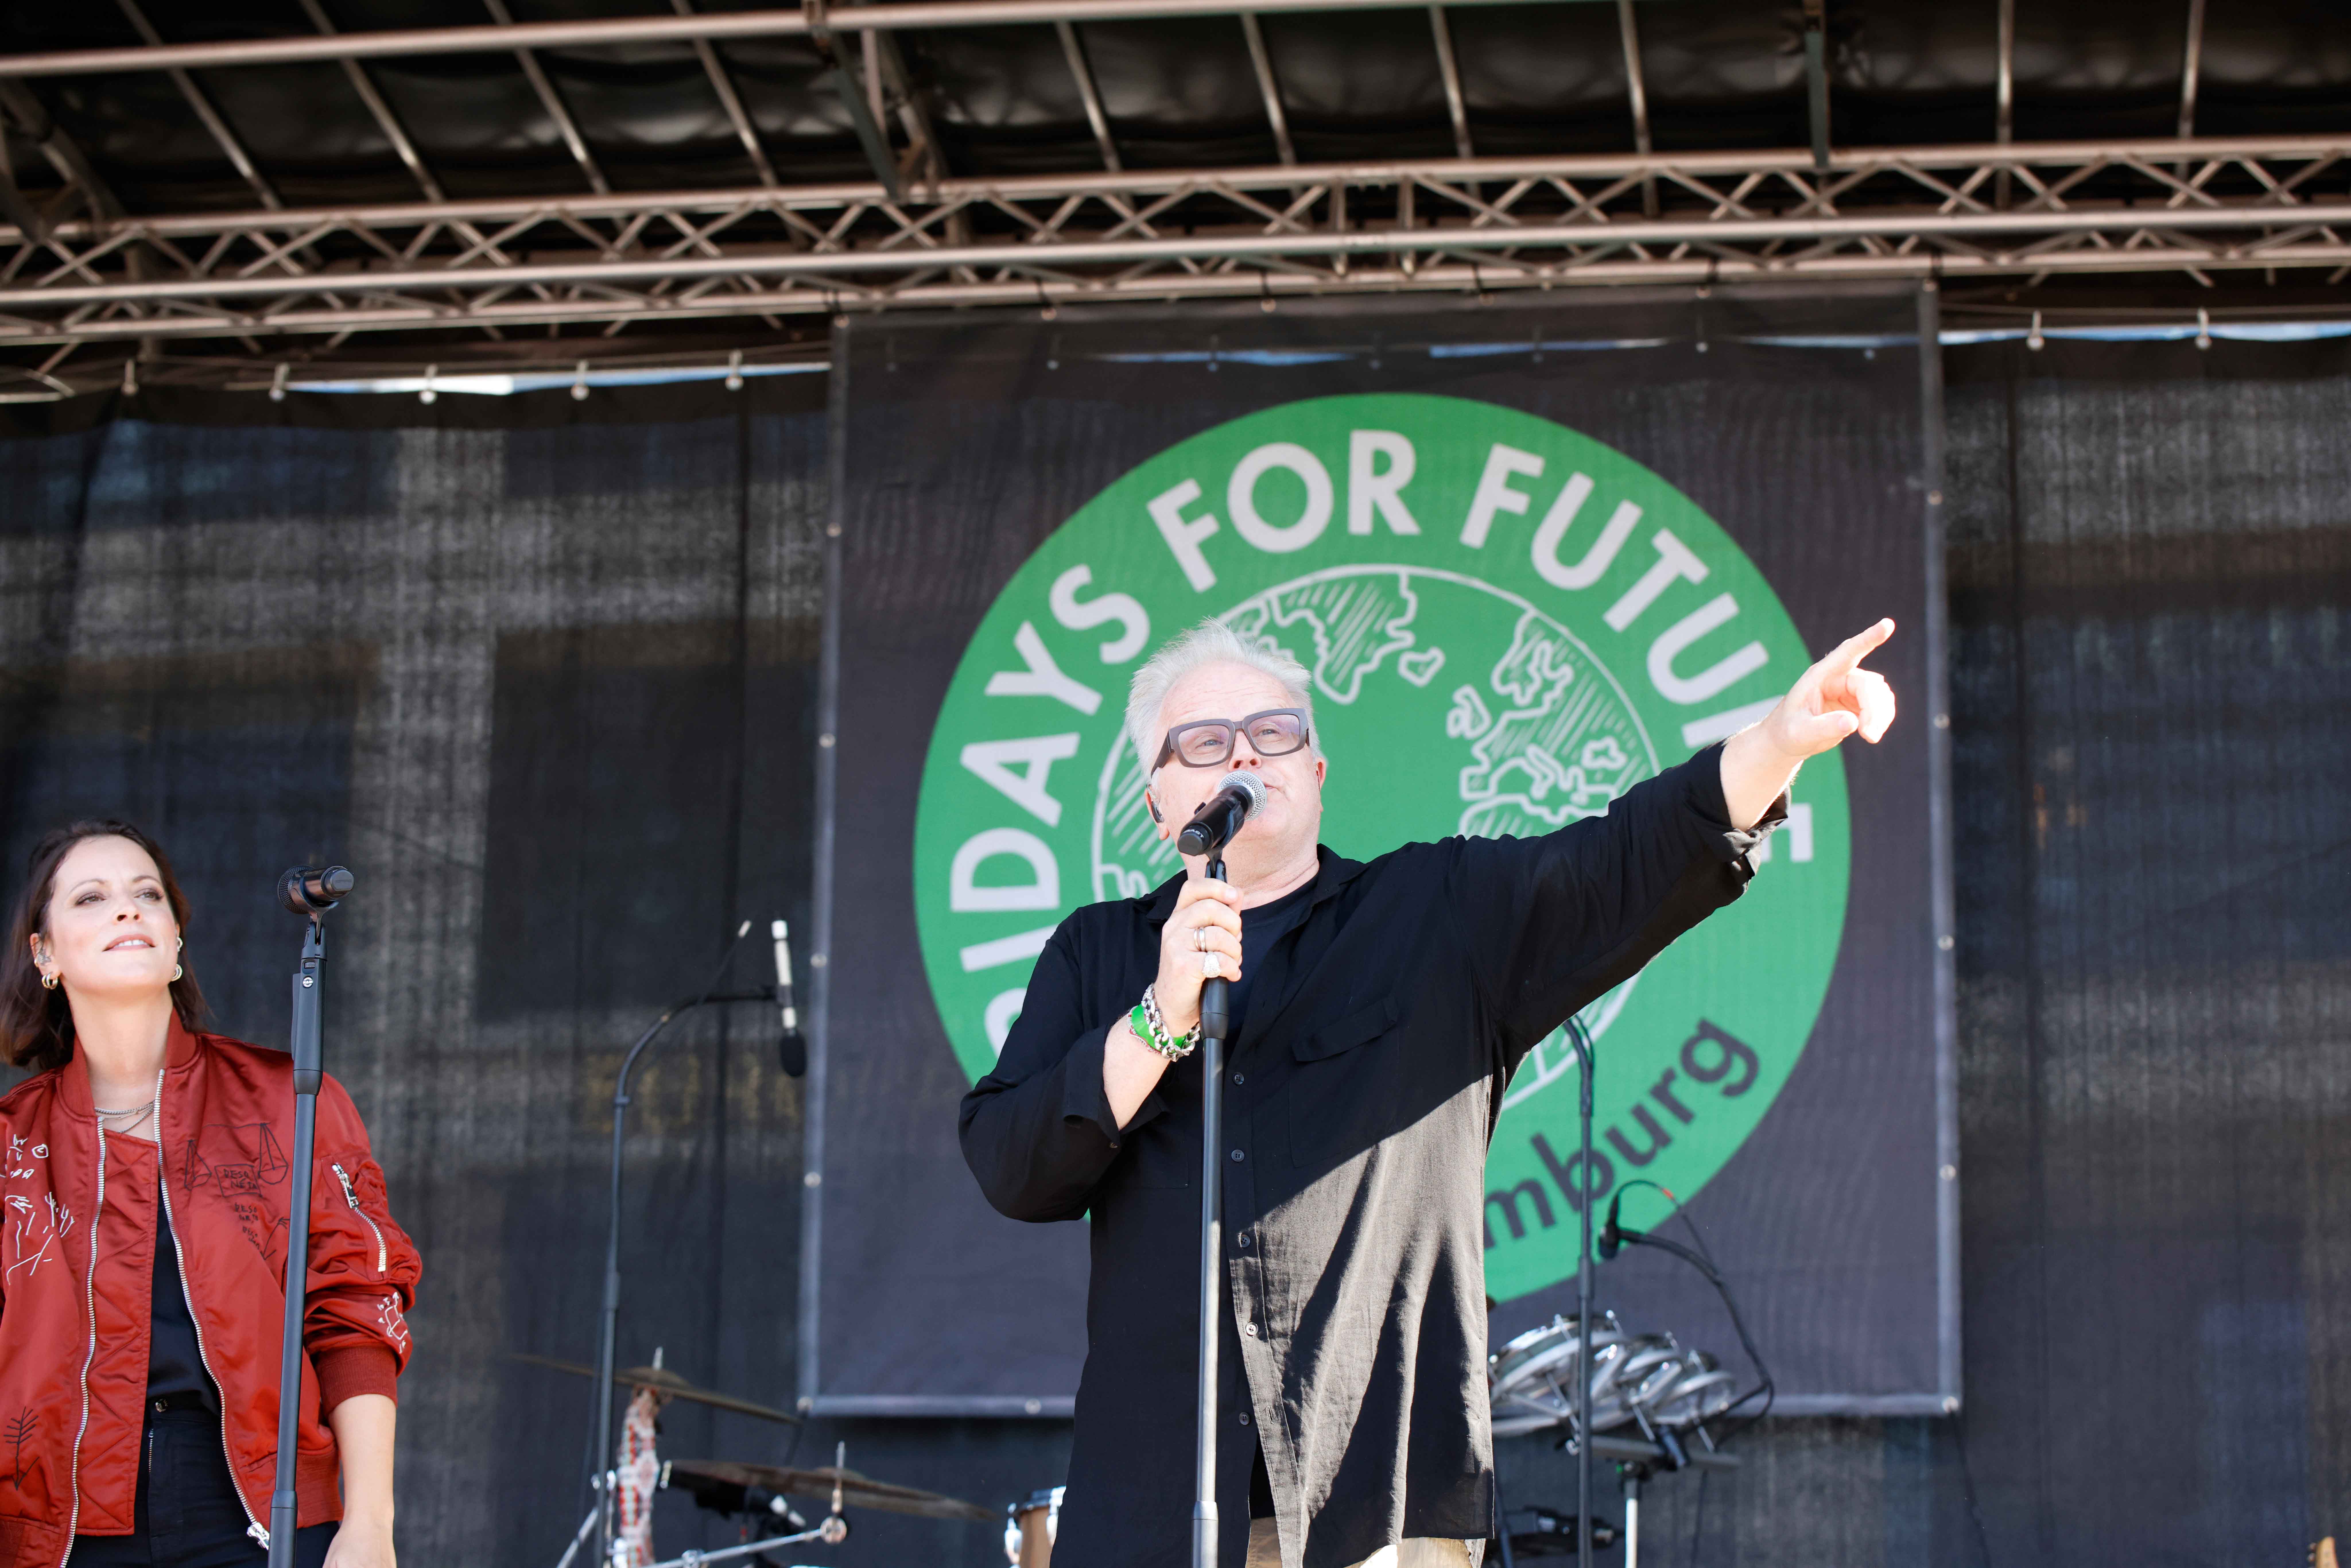 Herbert Grönemeyer steht zusammen mit Silbermond-Frontfrau Stefanie Kloß beim Klimastreik in Hamburg auf der Bühne.